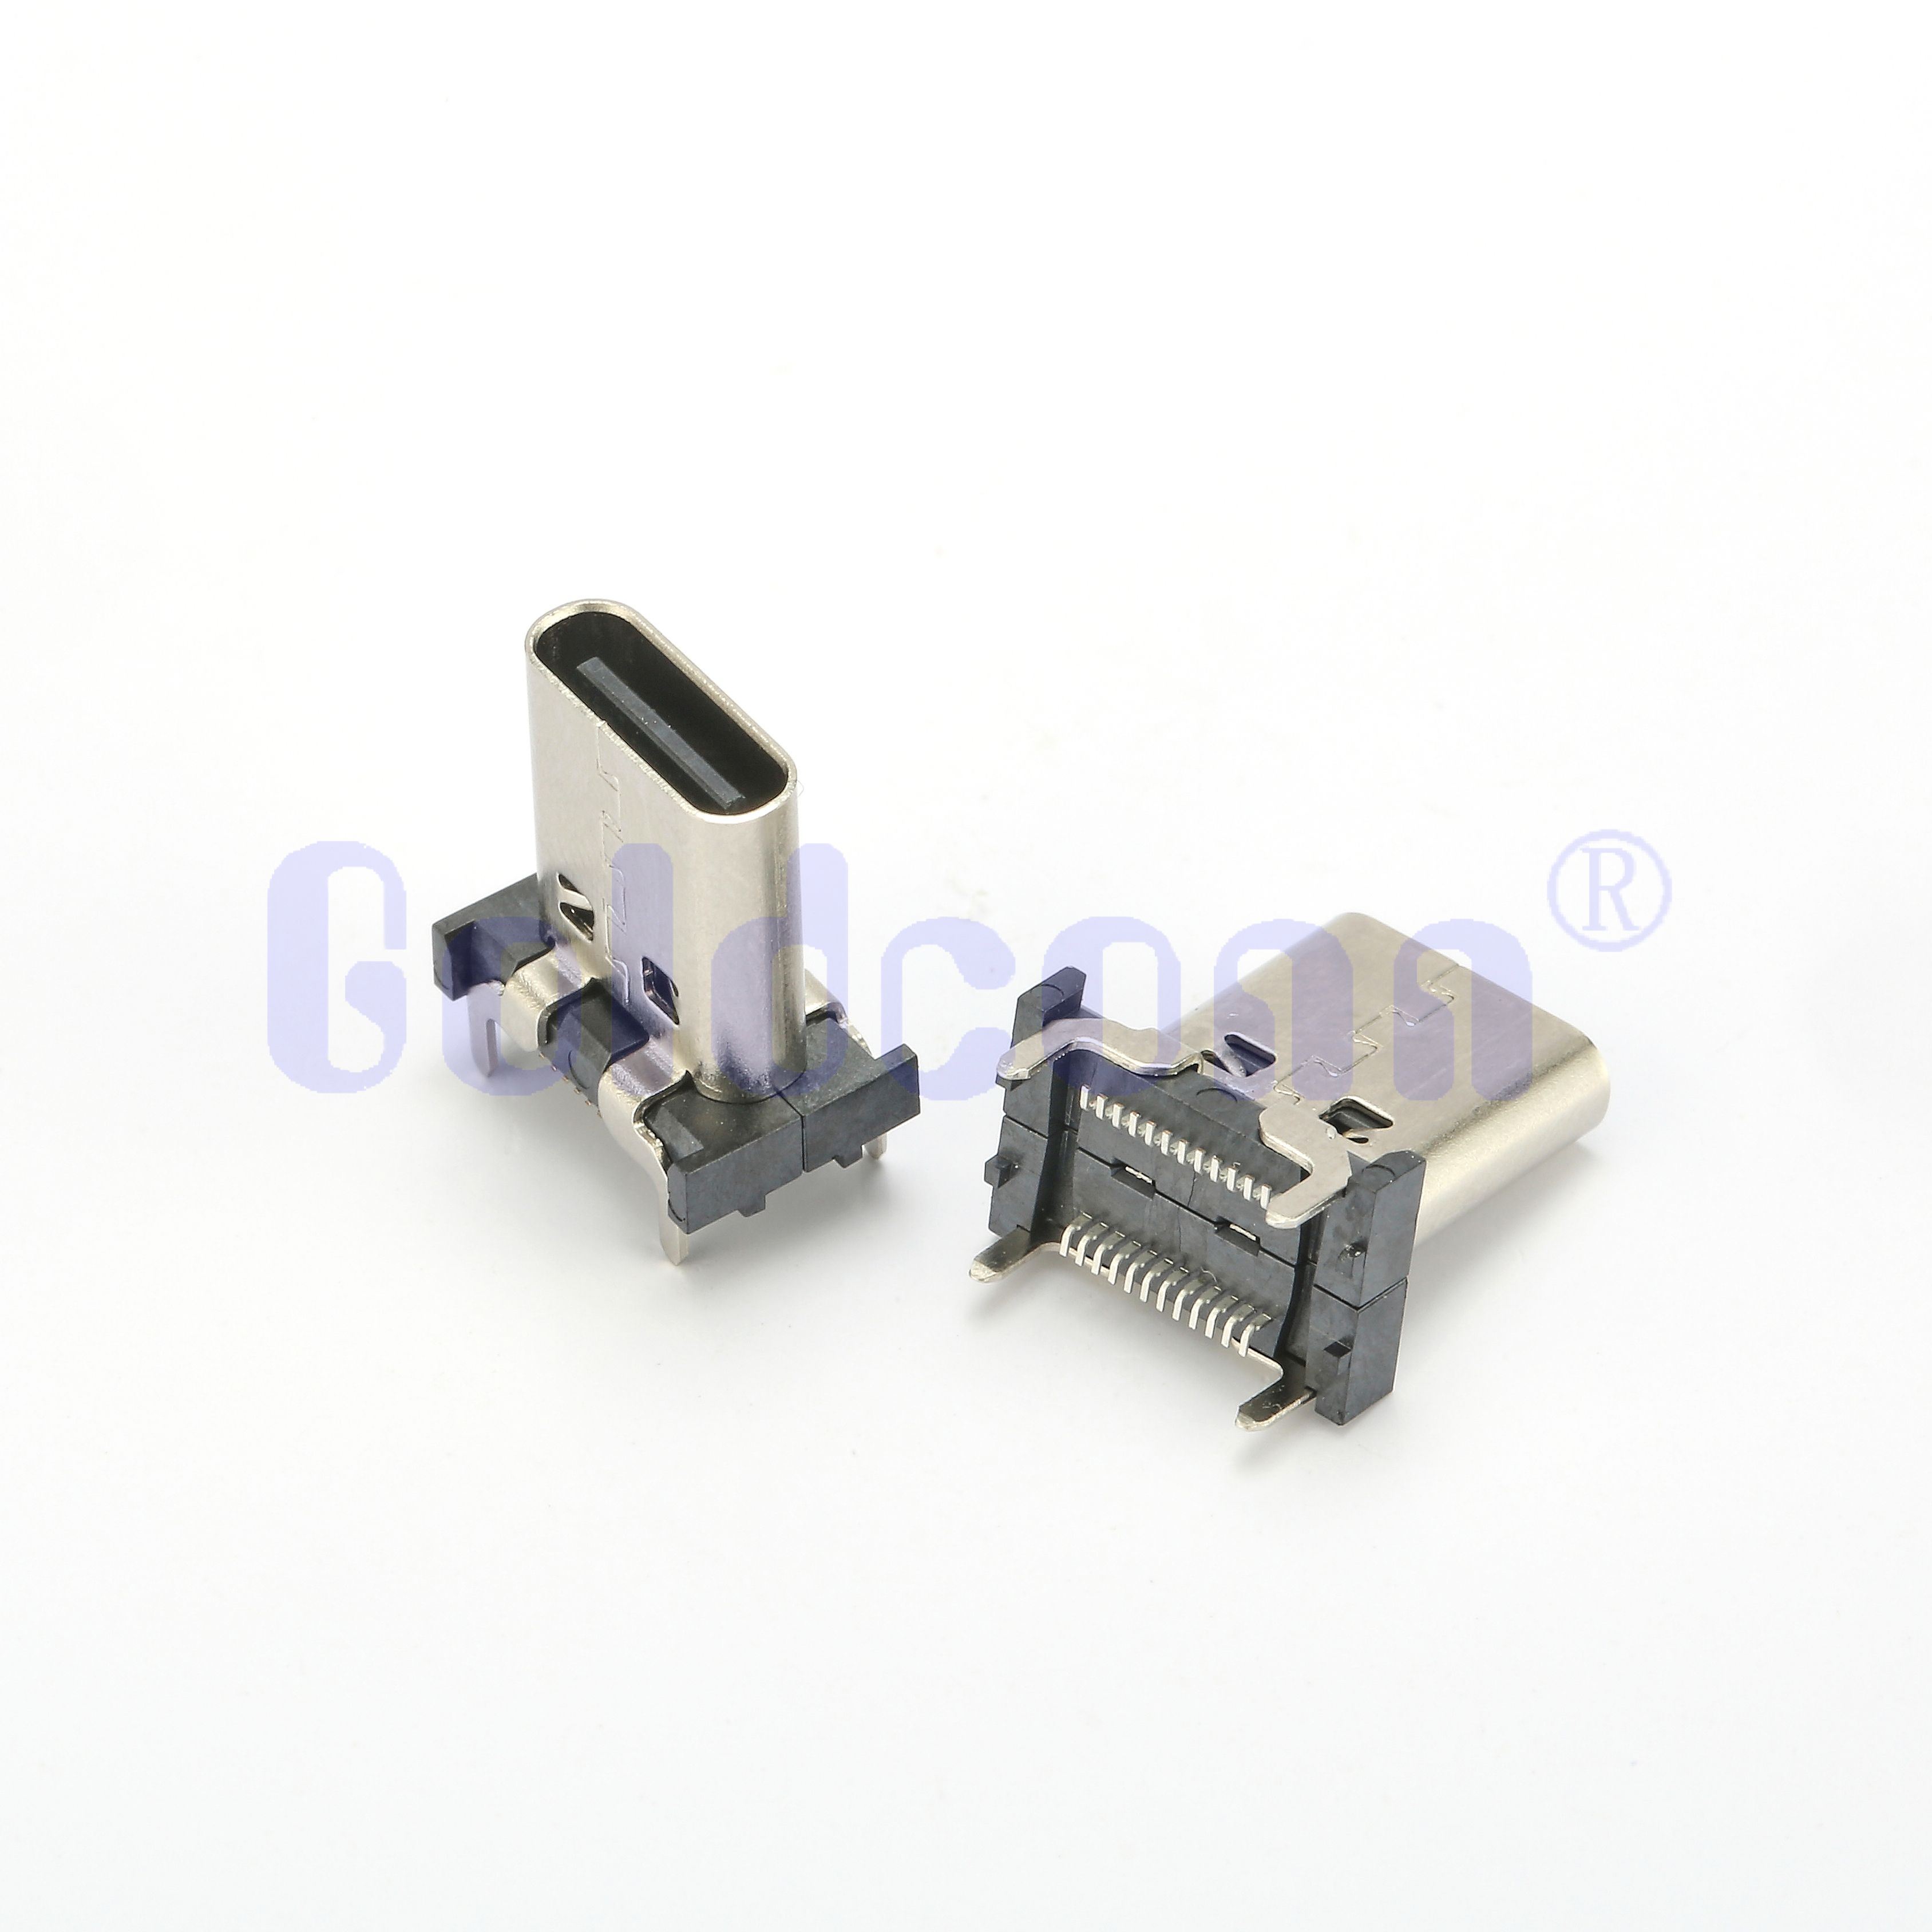 CF135-24LB01R-C3 Tipo C USB HEMBLE 24 PIN VERTICAL, DUAL FILA, SMT